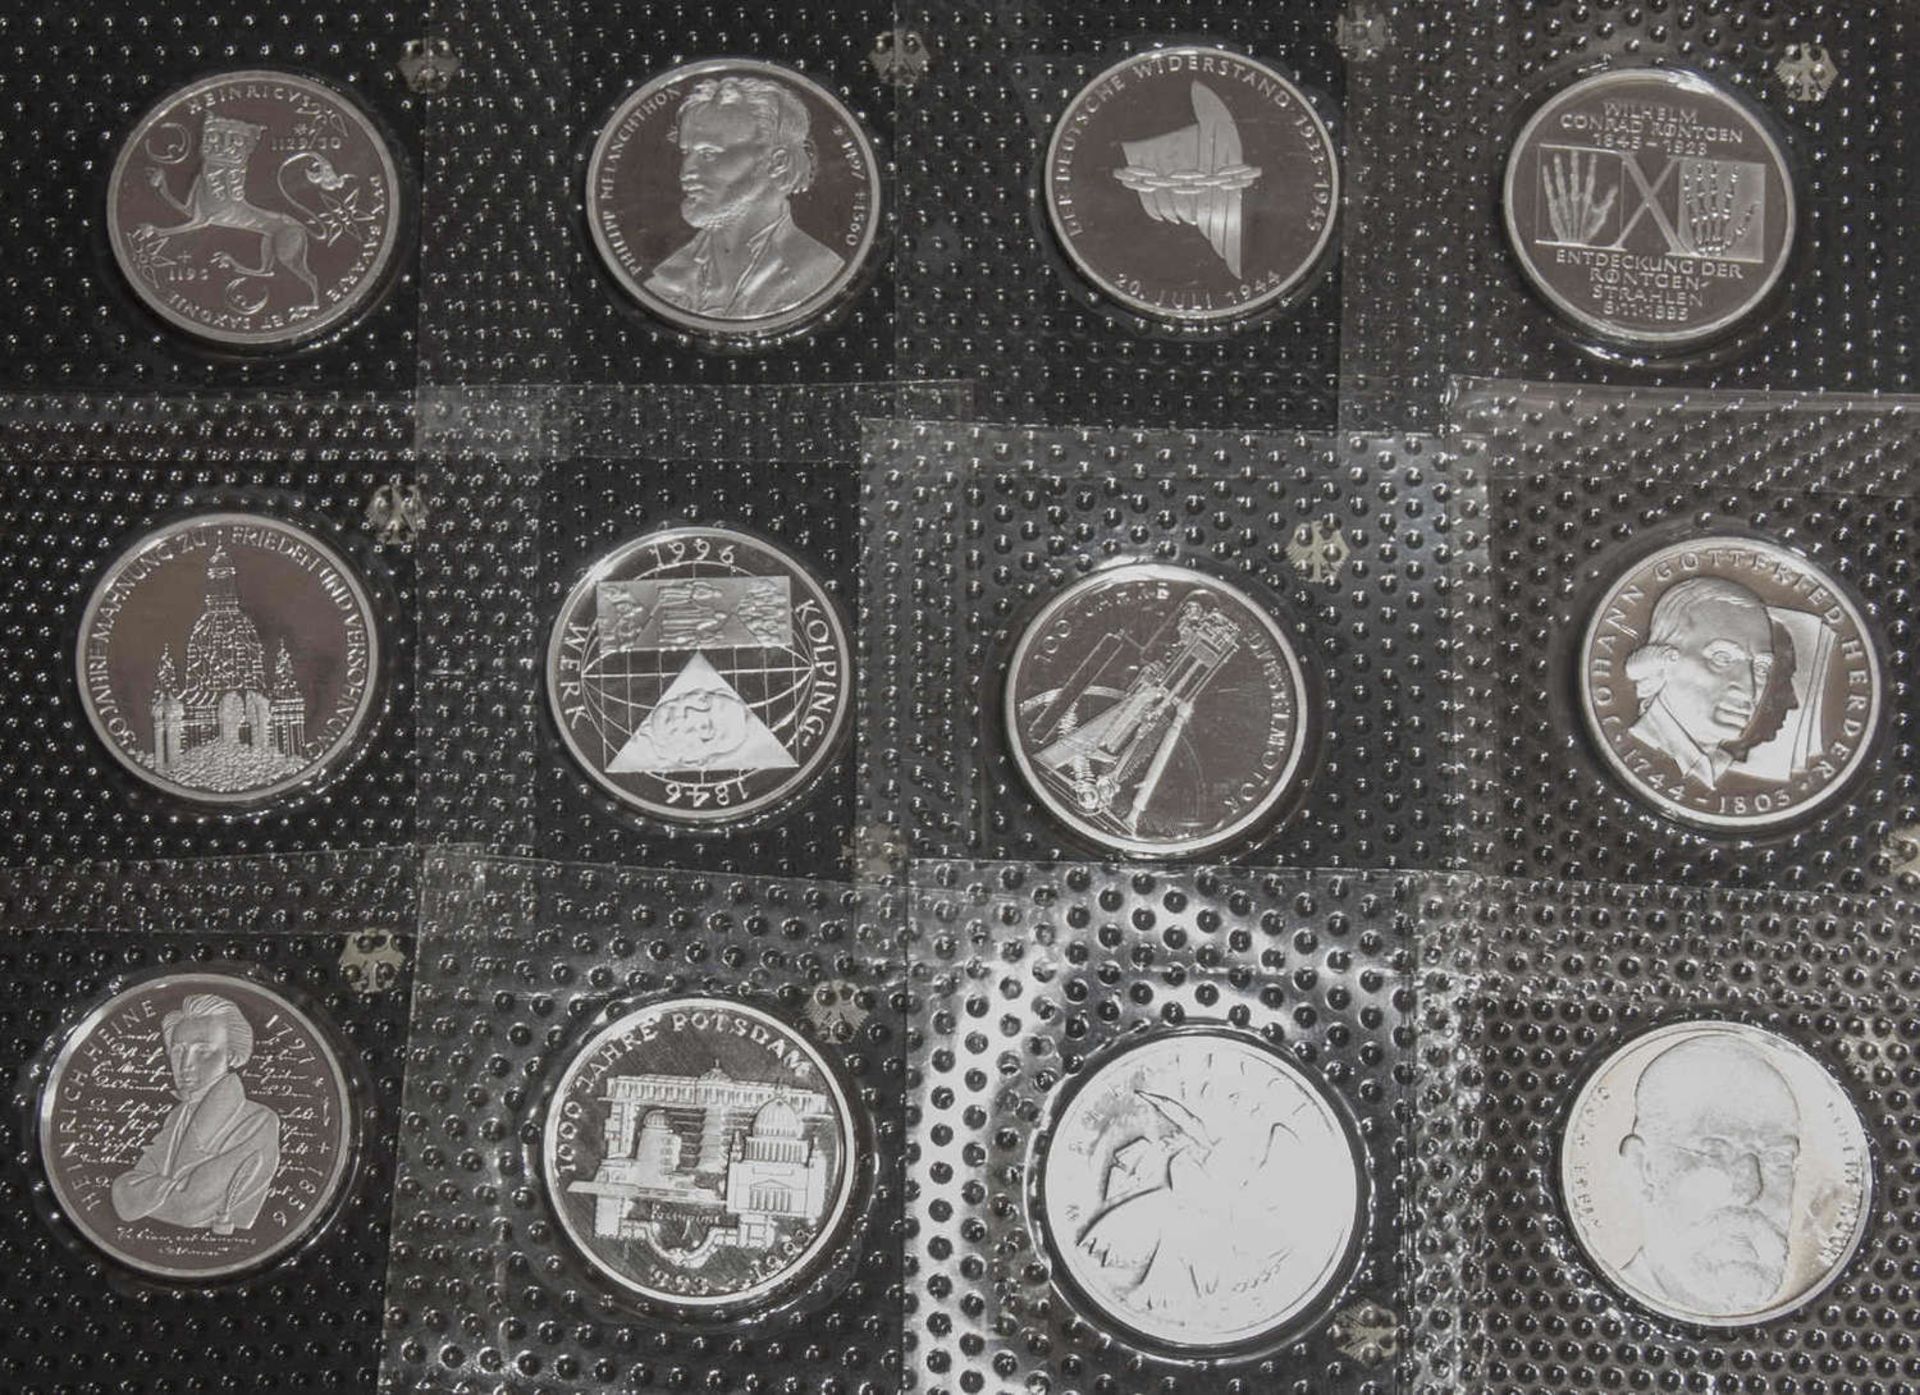 Deutschland 1993 - 98, Sammlung 10.- DM - Silber - Gedenkmünzen. Insgesamt 12 Stück. Alle in